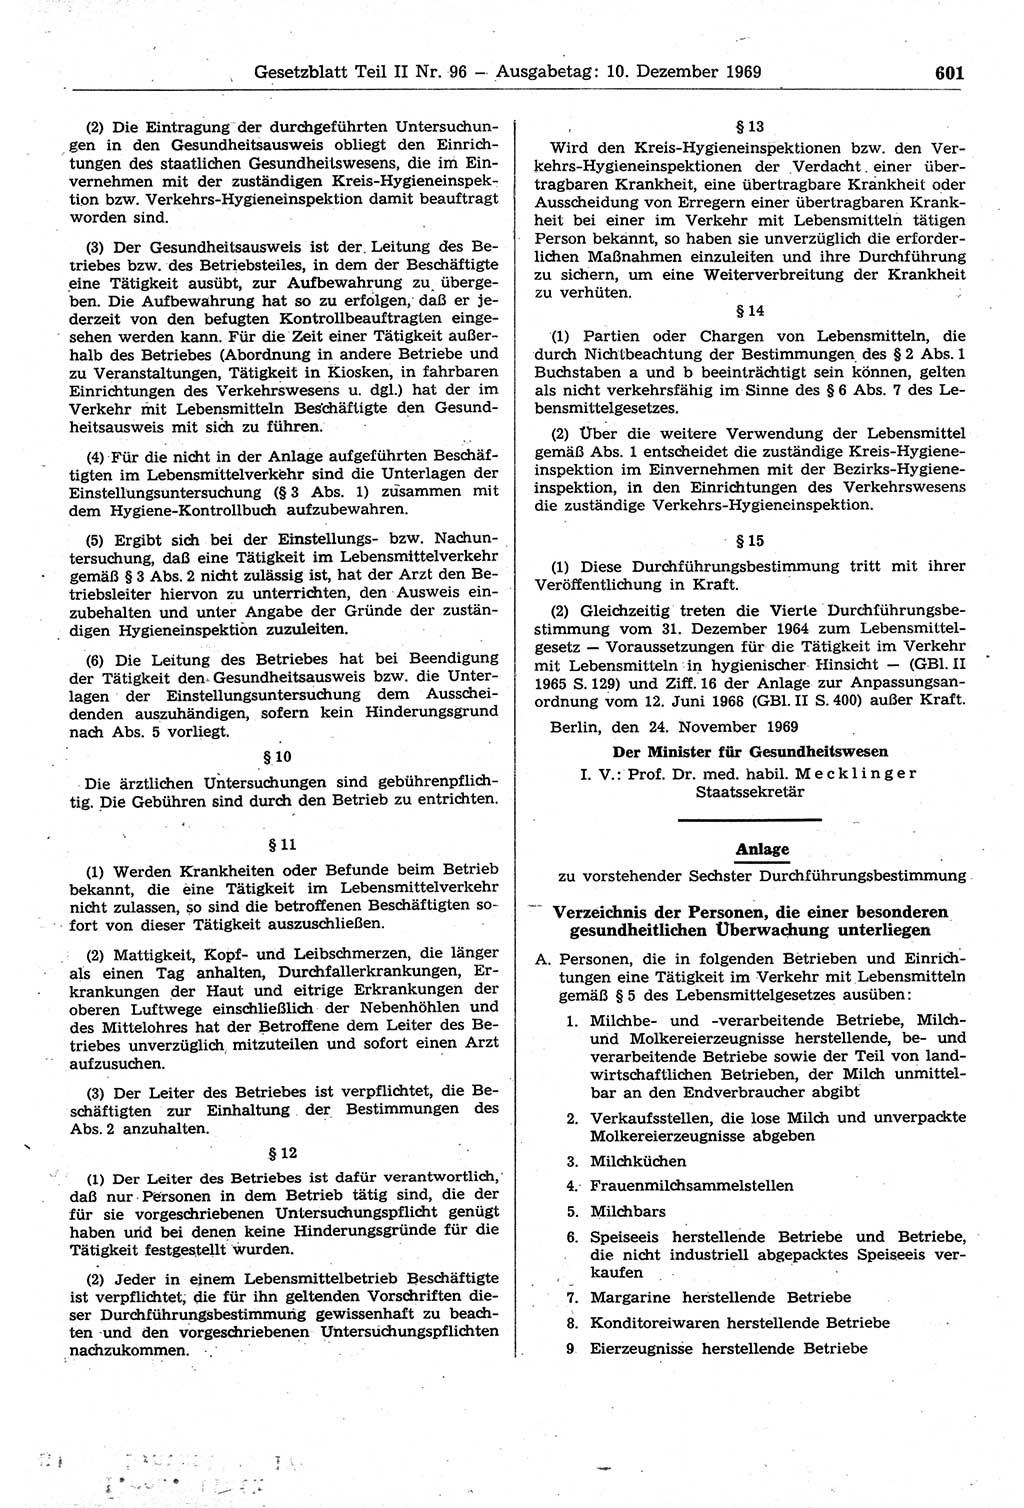 Gesetzblatt (GBl.) der Deutschen Demokratischen Republik (DDR) Teil ⅠⅠ 1969, Seite 601 (GBl. DDR ⅠⅠ 1969, S. 601)